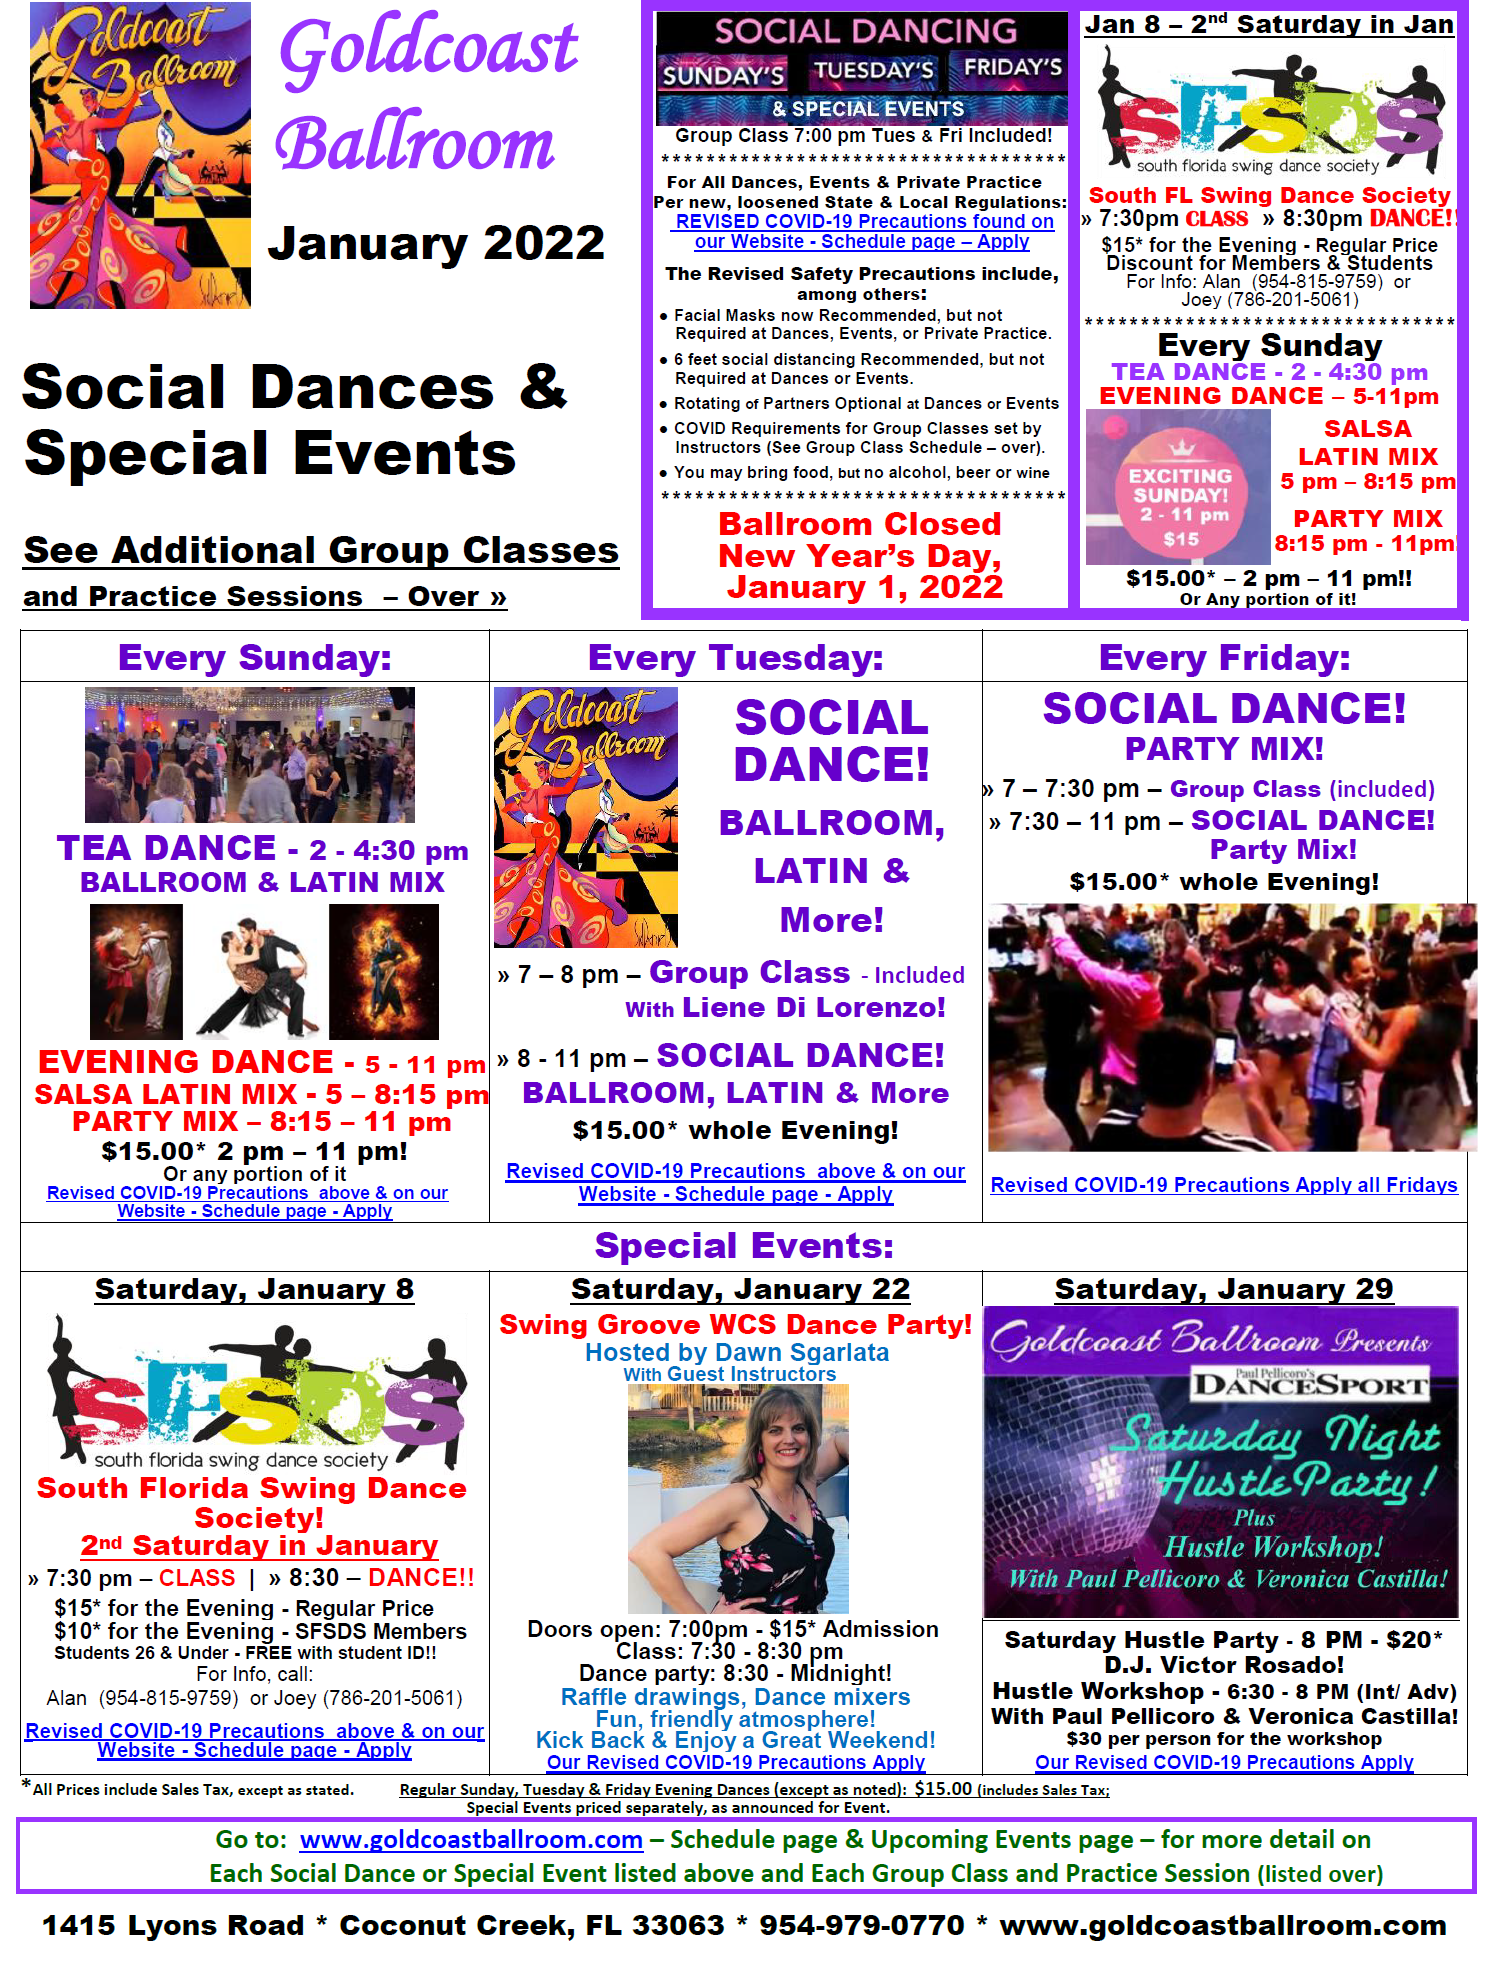 Goldcoast Ballroom January, 2022 Calendar - Social Dances & Special Events